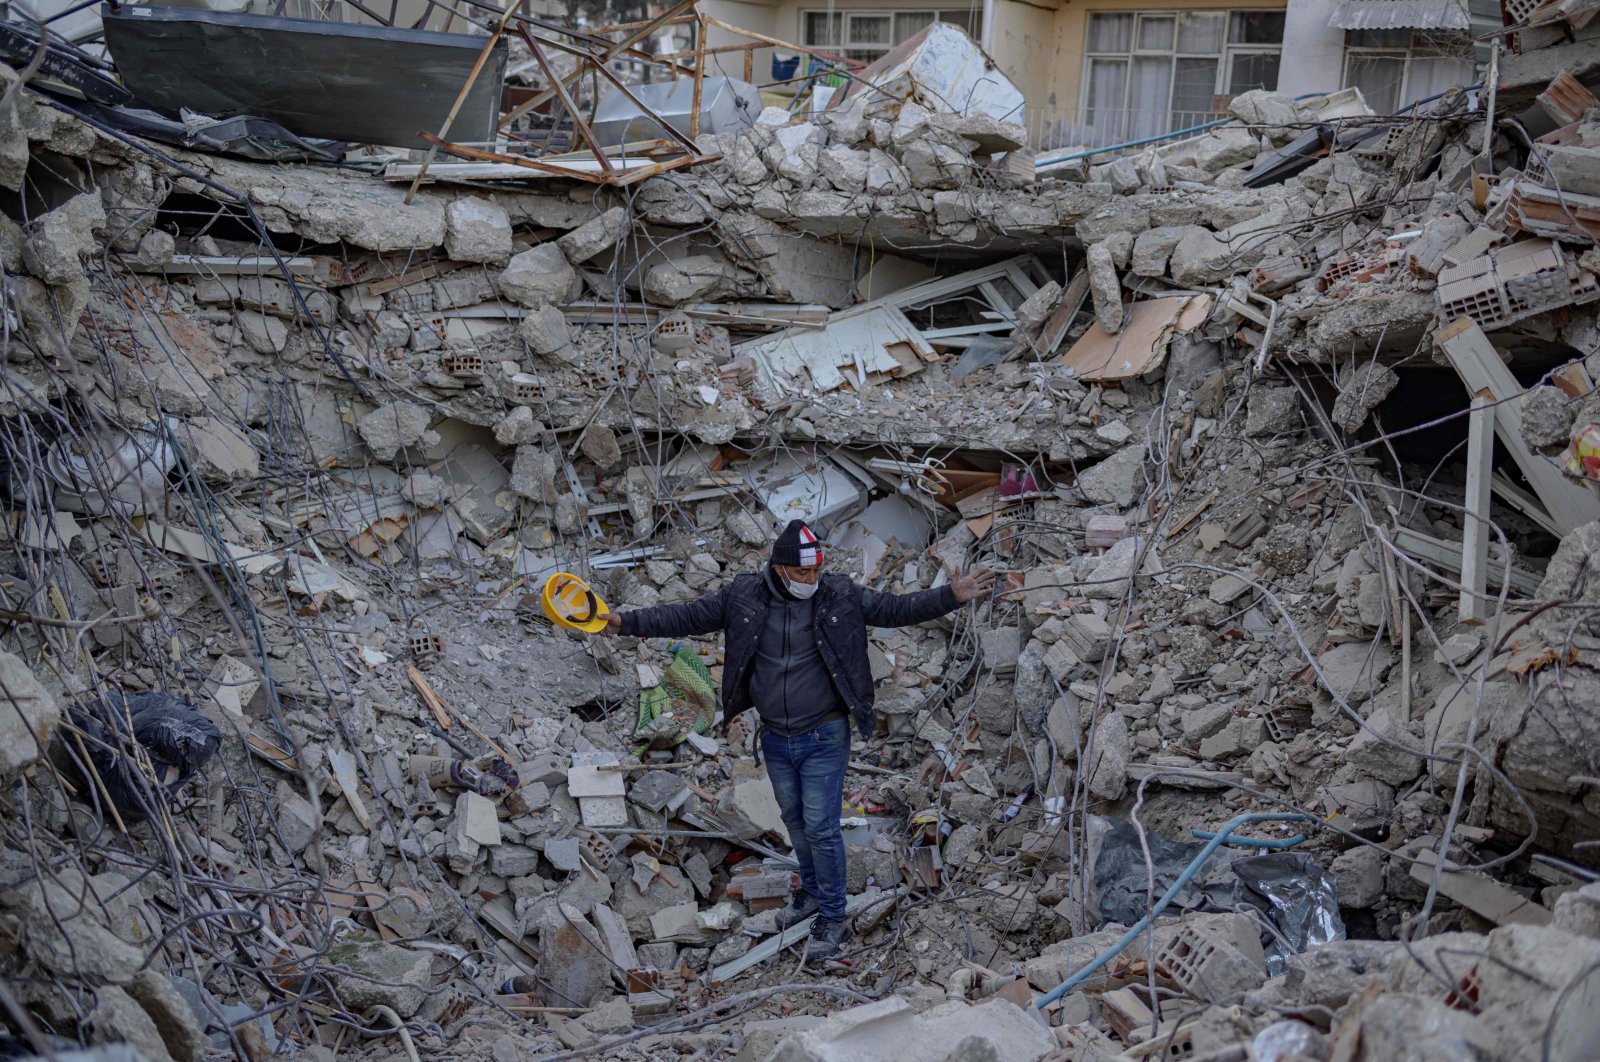 Korban tewas akibat gempa bumi Türkiye mencapai 38.000